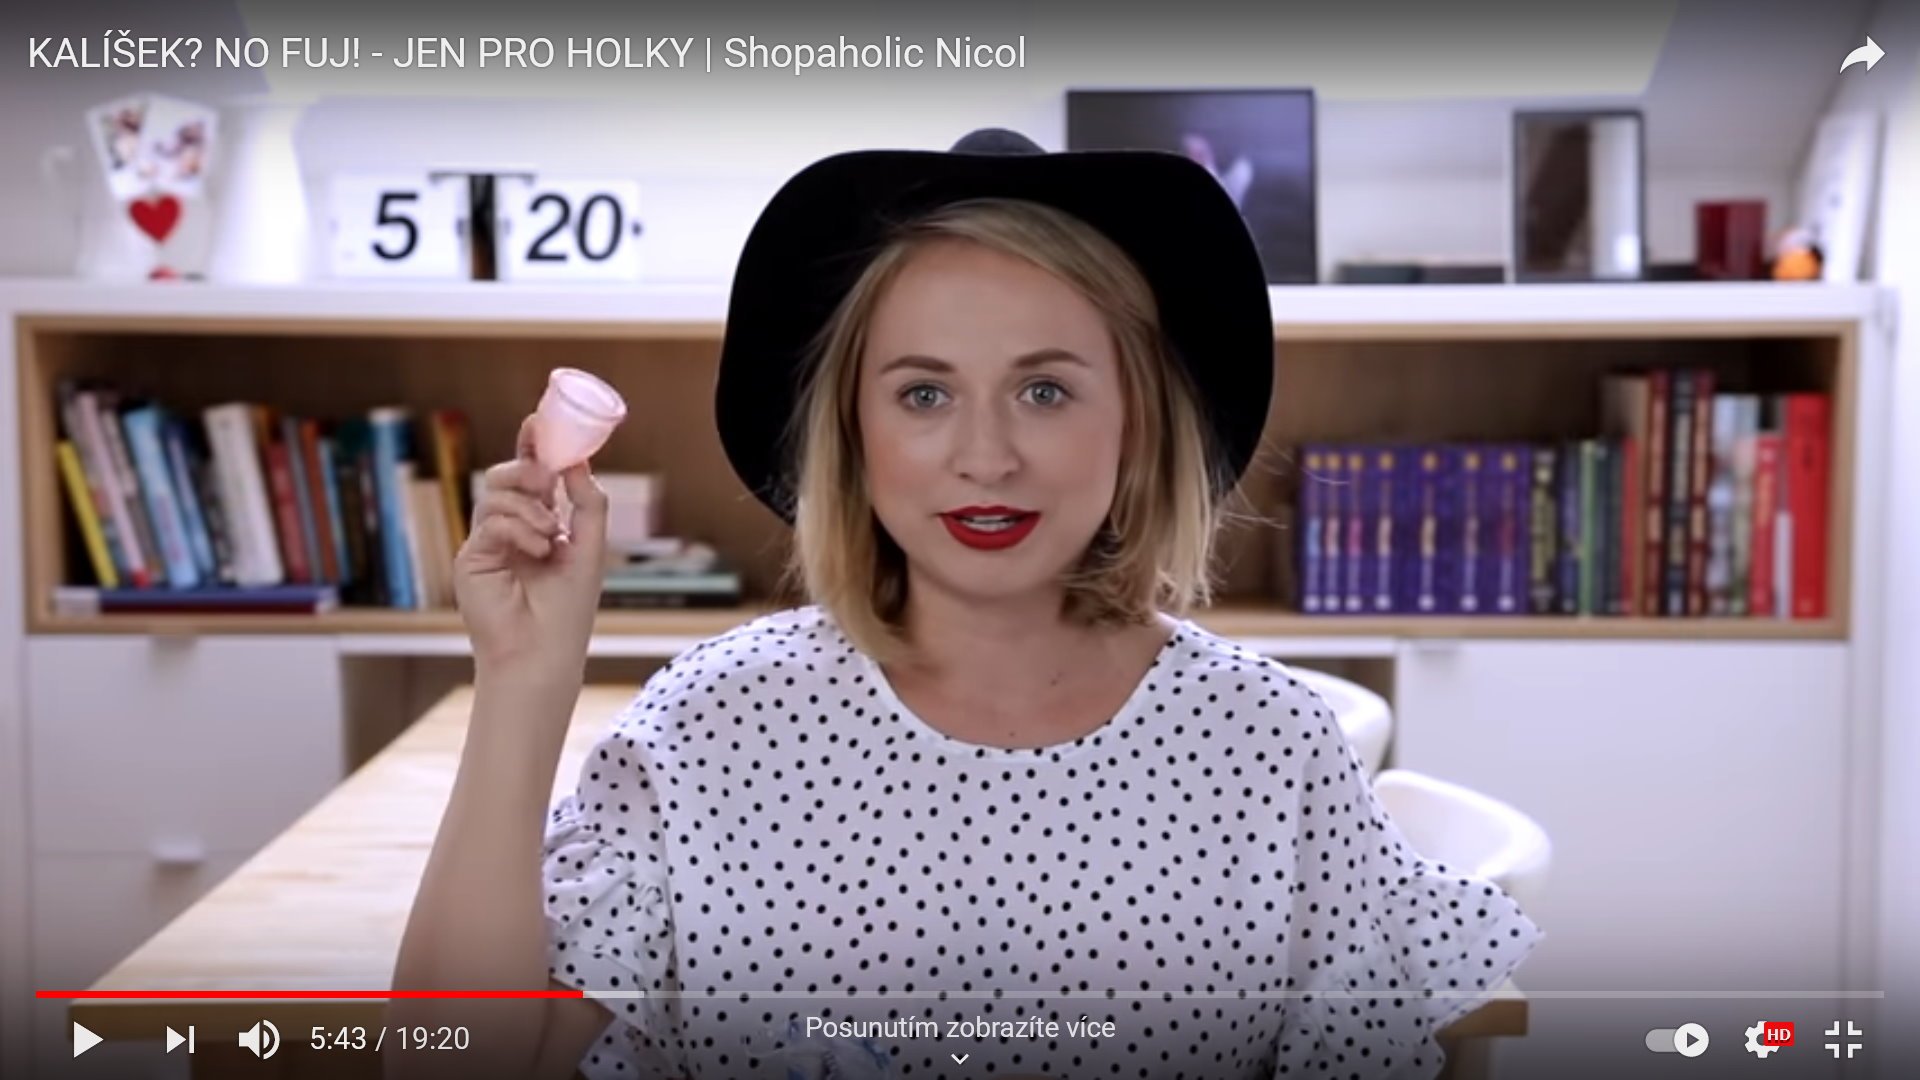 Video pregled menstrualne skodelice LUNACUP - Shopaholic Nicol